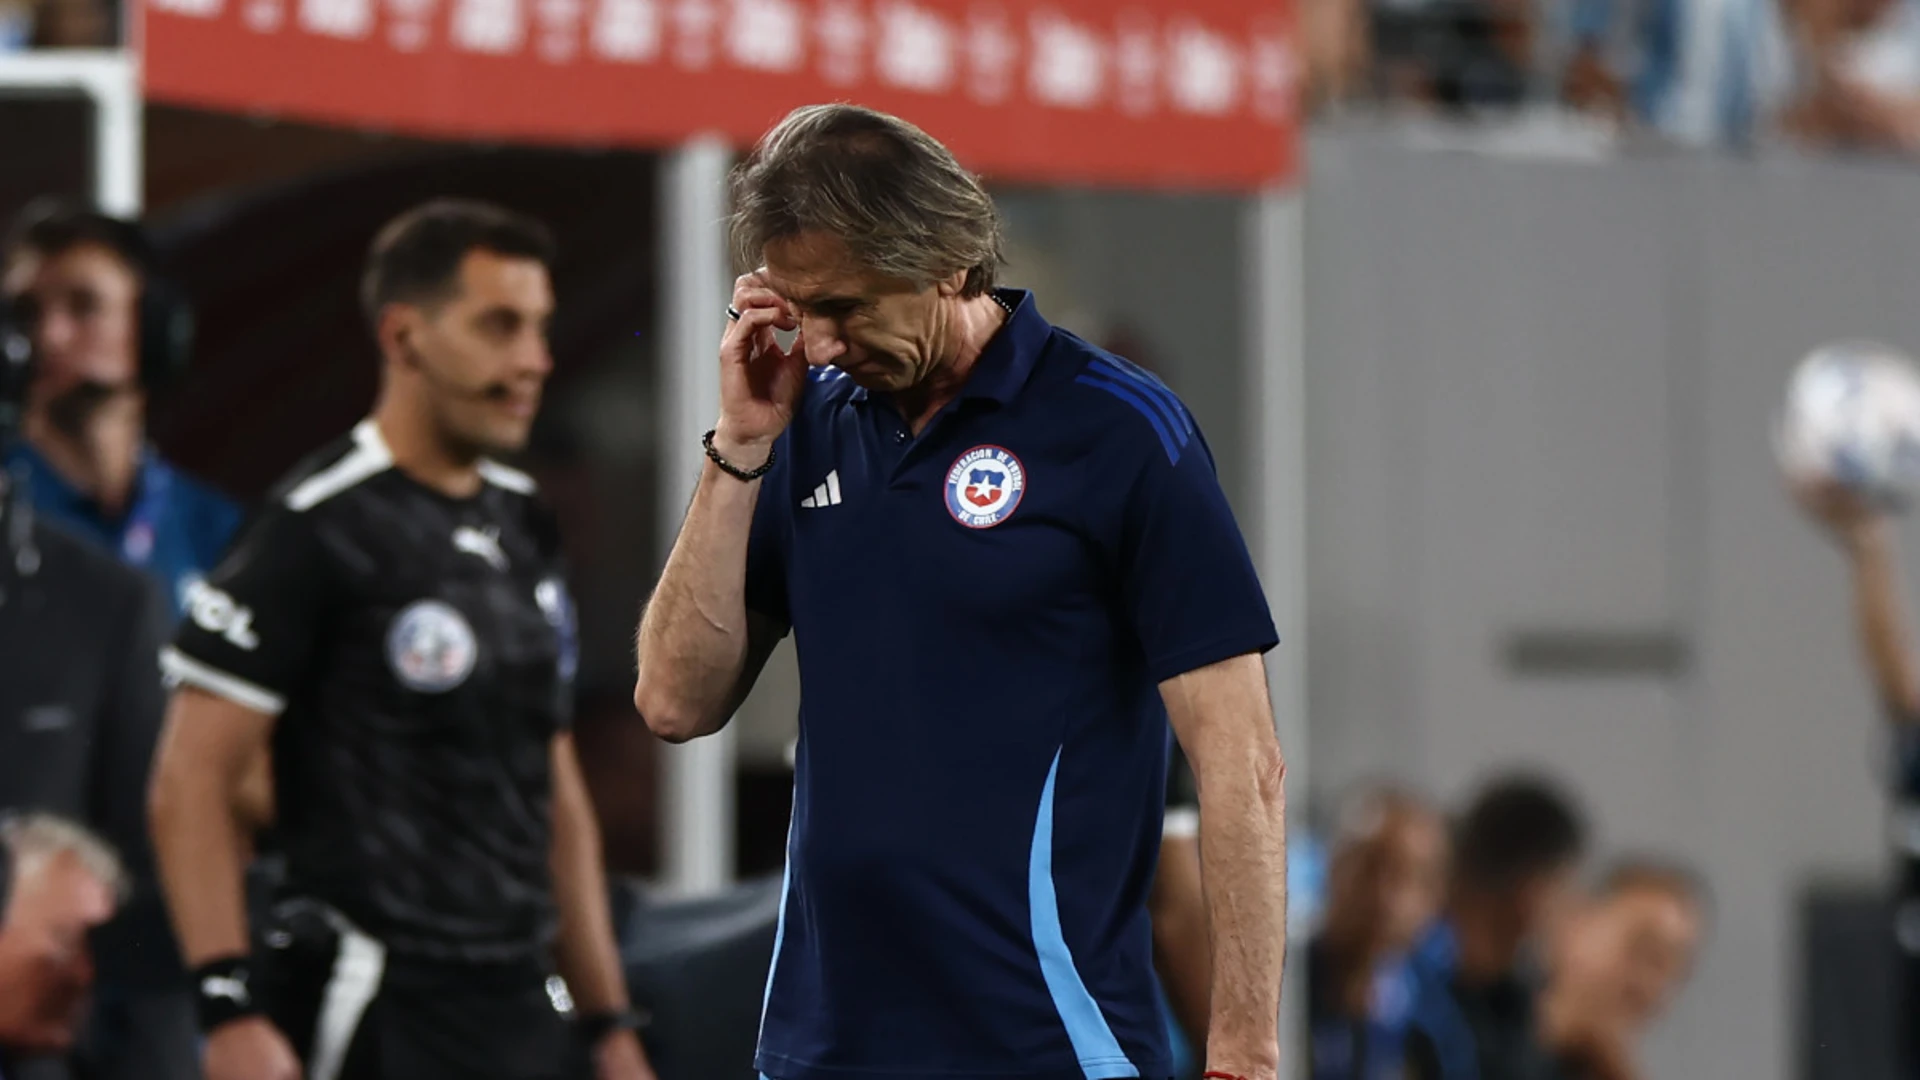 Gareca's sanction caught us by surprise, says Chile assistant coach